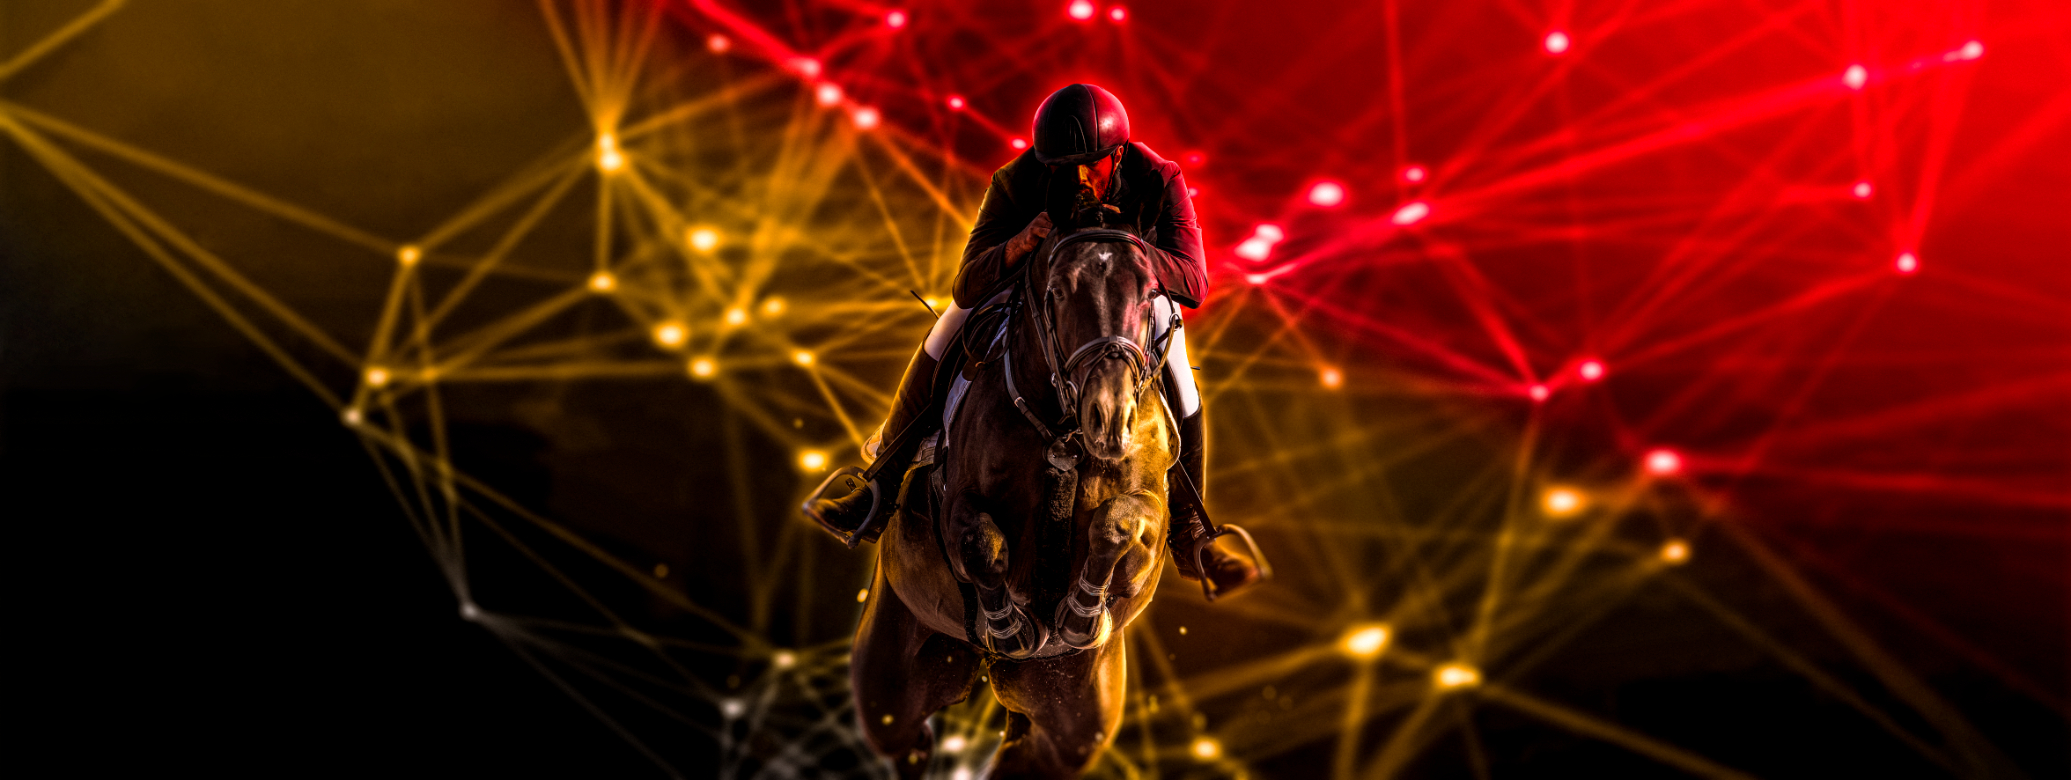 Belgische paardensector trekt naar Wereldexpo in Dubai!